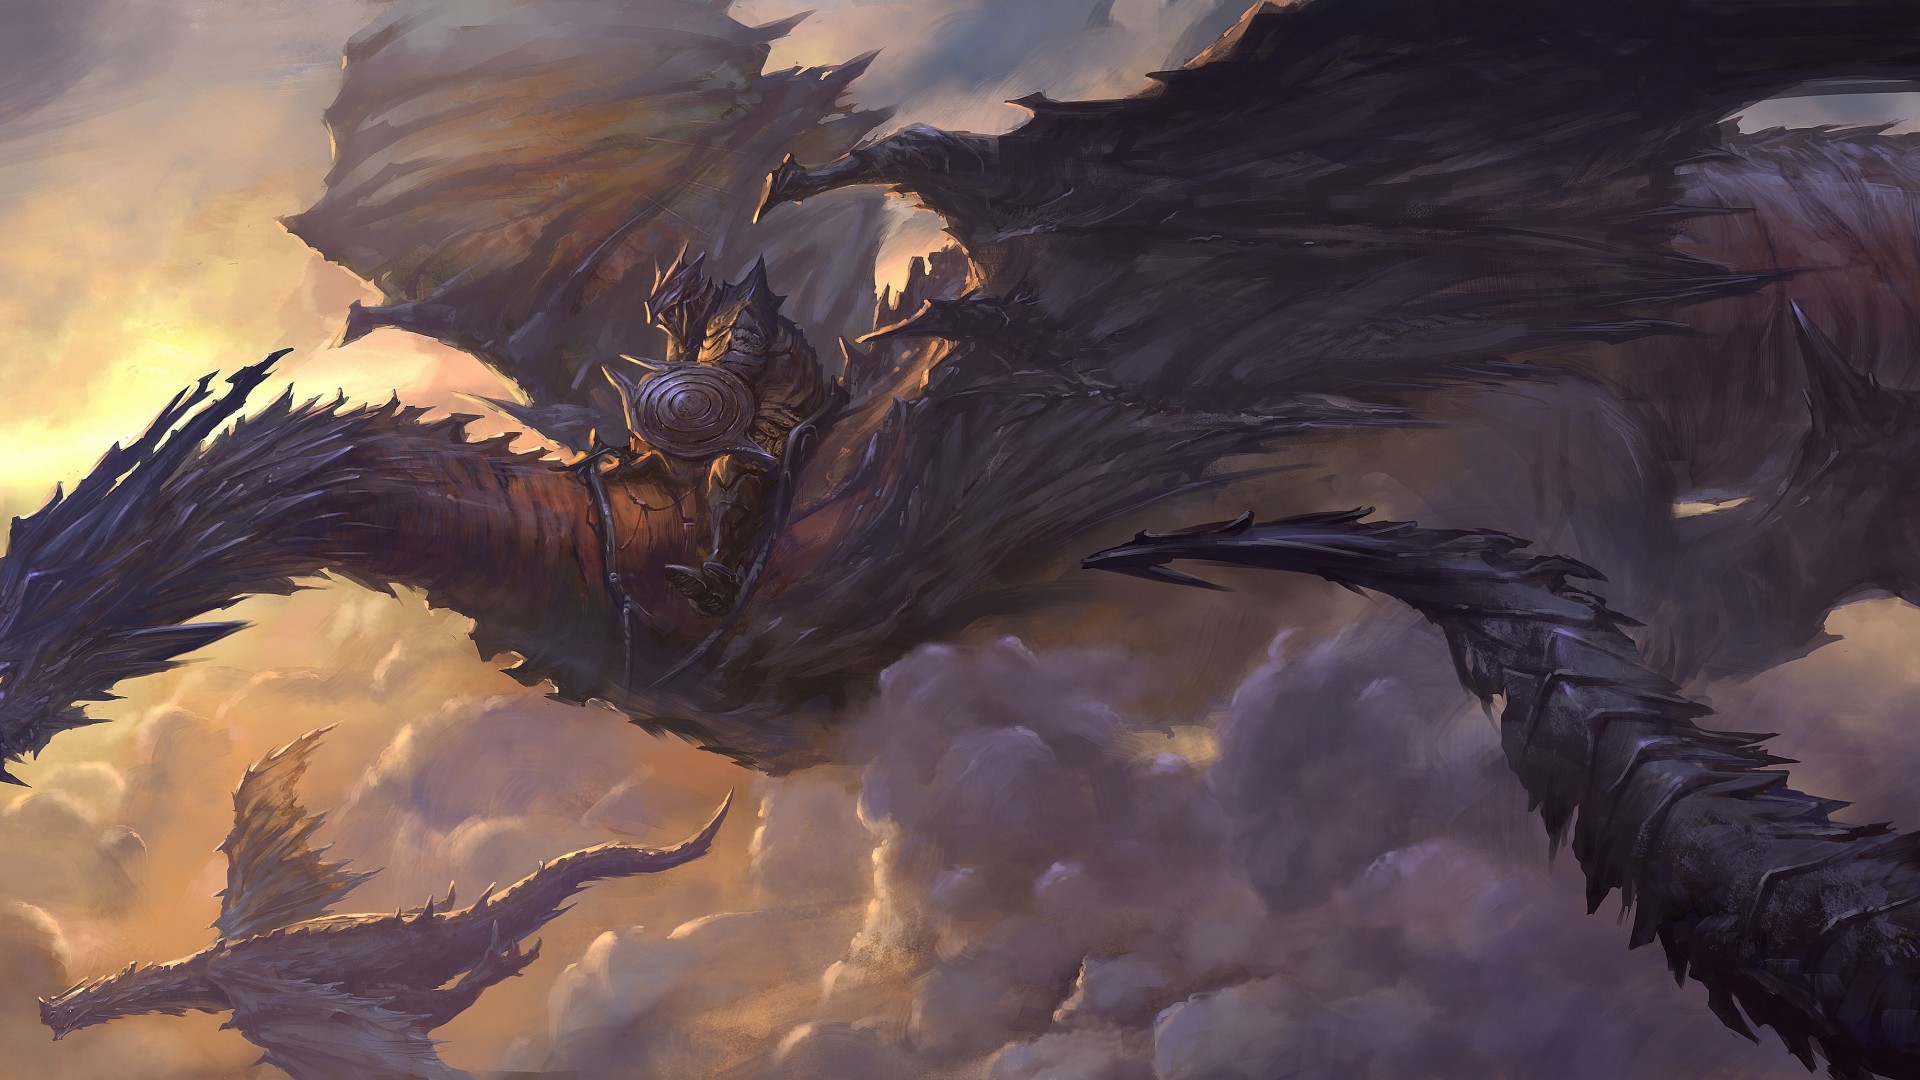 дракон, небо, облака, всадник, наездник, доспехи, арт, крылья, черные, фентези, Dragon, sky, clouds, rider, armor, art, wings, black, fantasy (horizontal)